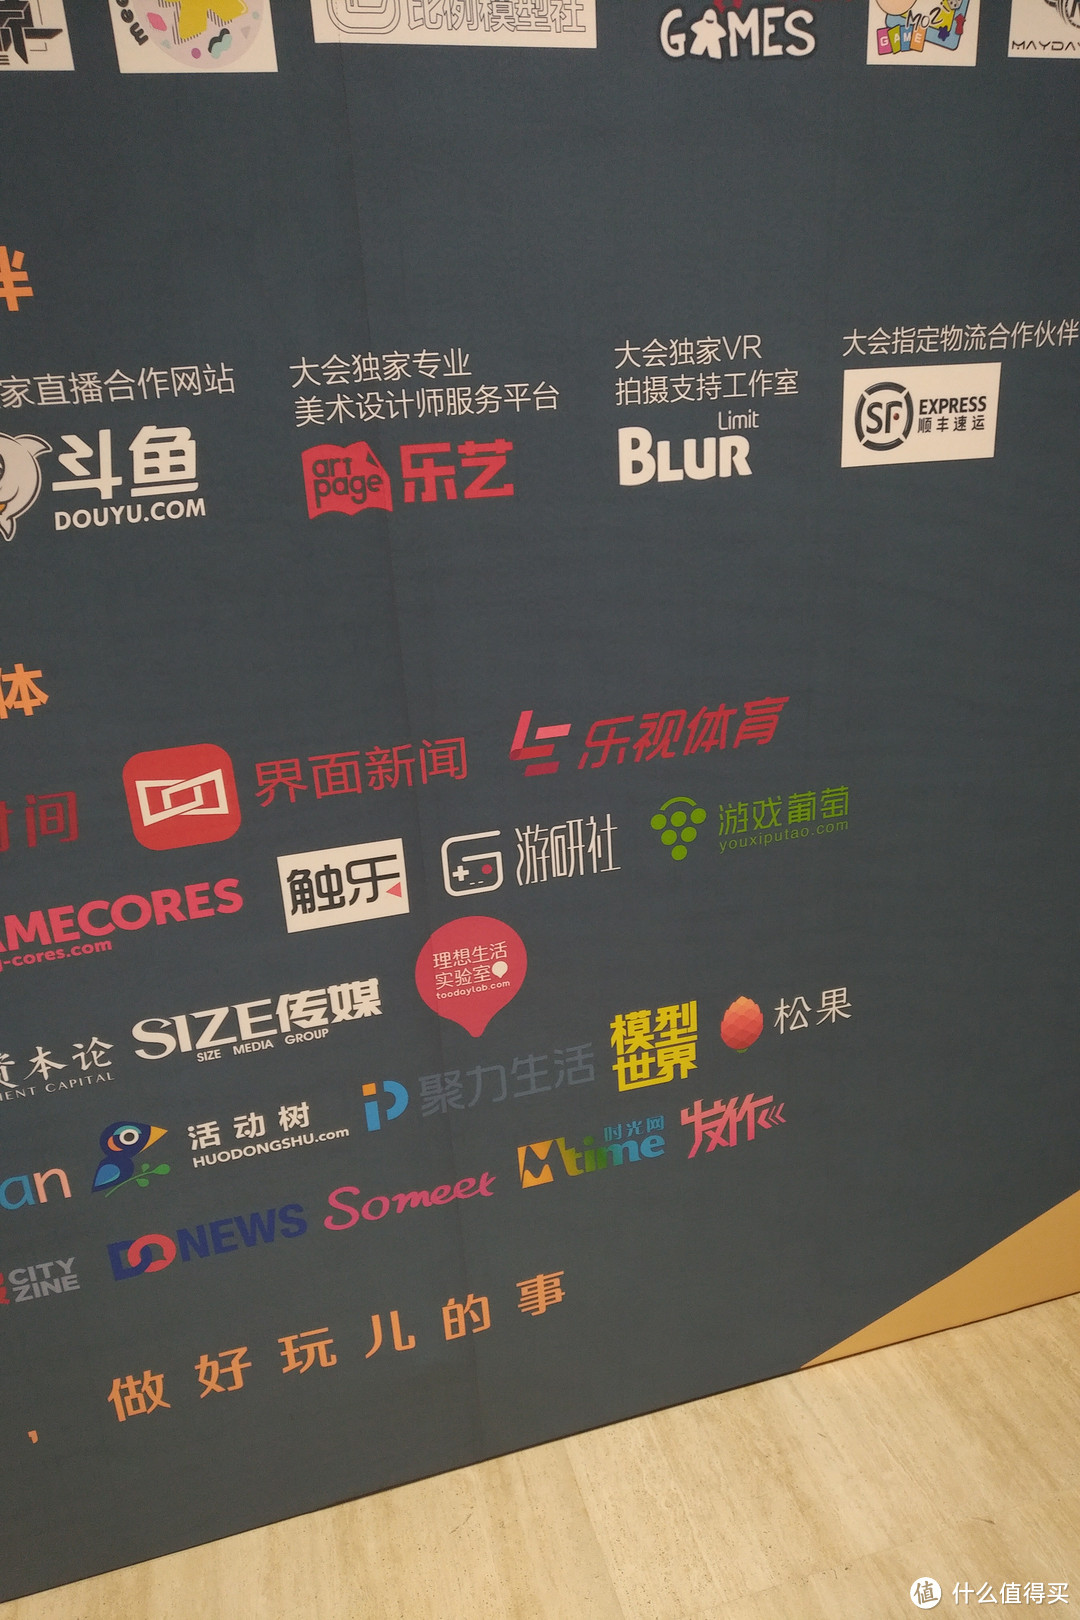 Dice Con 2017 北京展会小游记+买买买 (图多杀光纤)